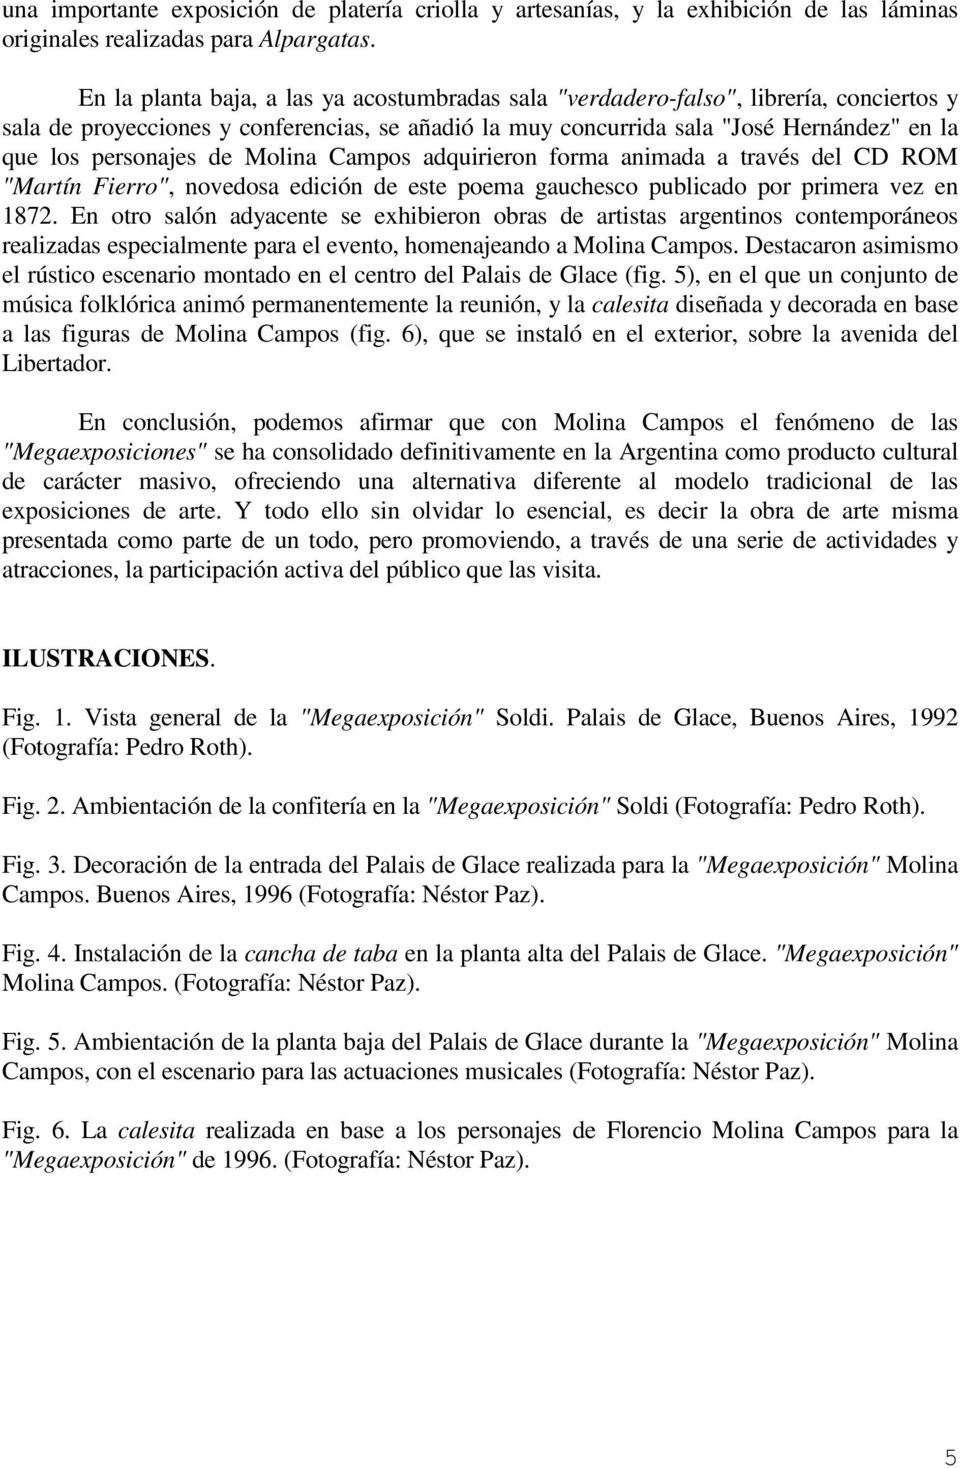 personajes de Molina Campos adquirieron forma animada a través del CD ROM "Martín Fierro", novedosa edición de este poema gauchesco publicado por primera vez en 1872.